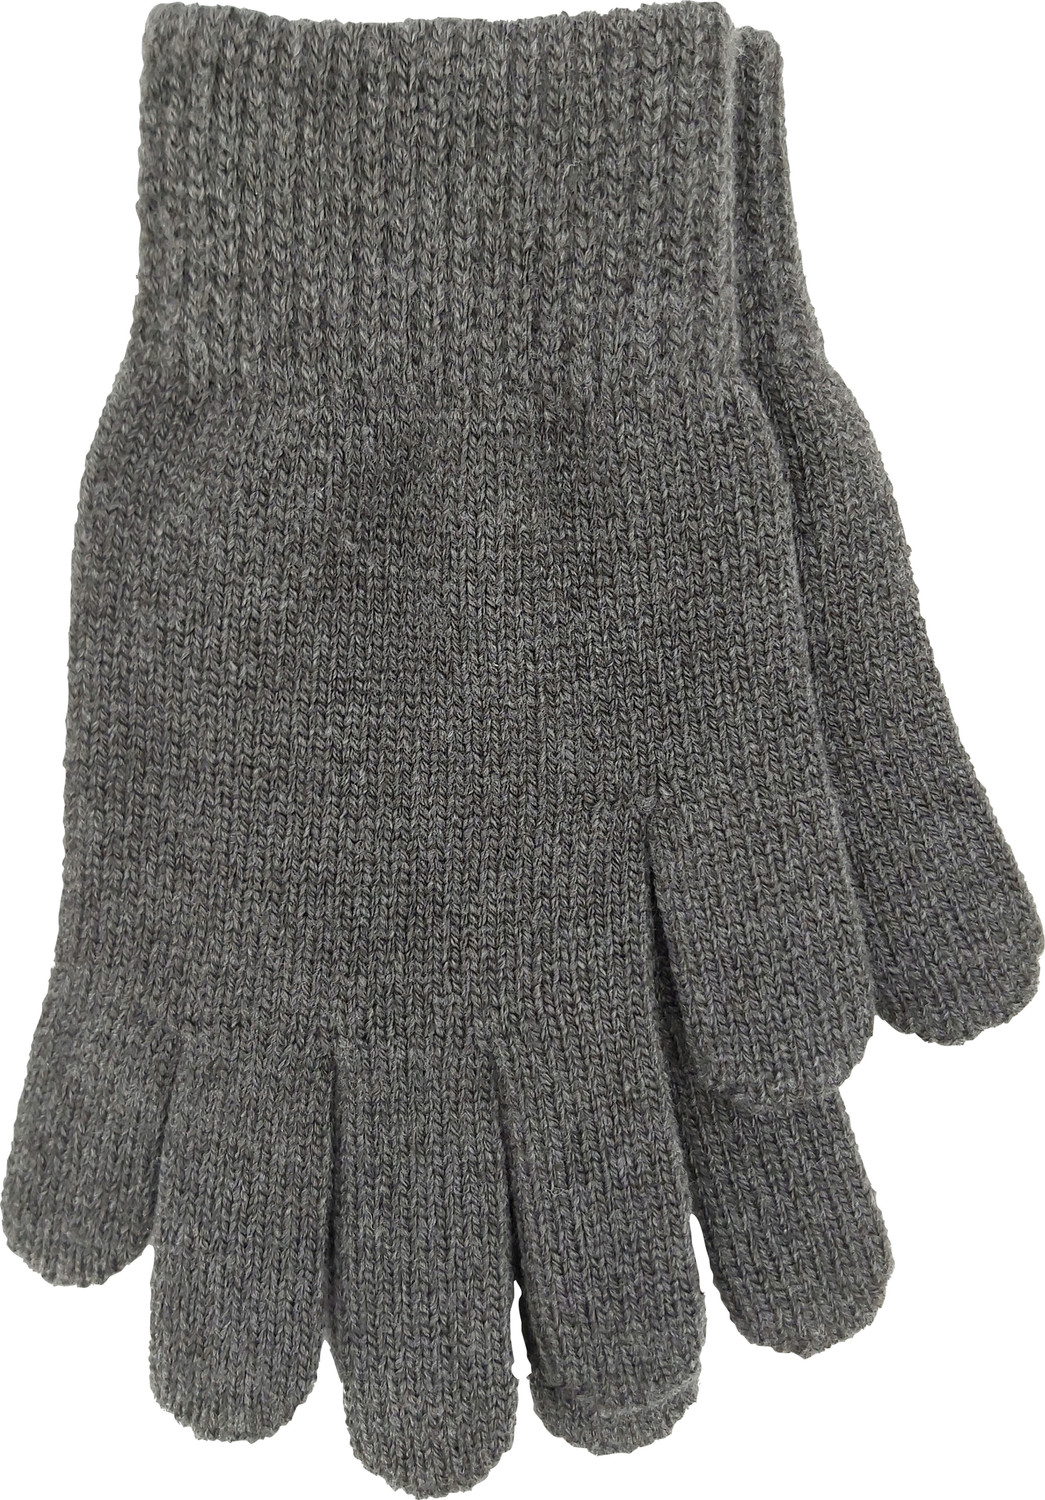 VOXX® rukavice Terracana rukavice antracit 1 ks uni 119844